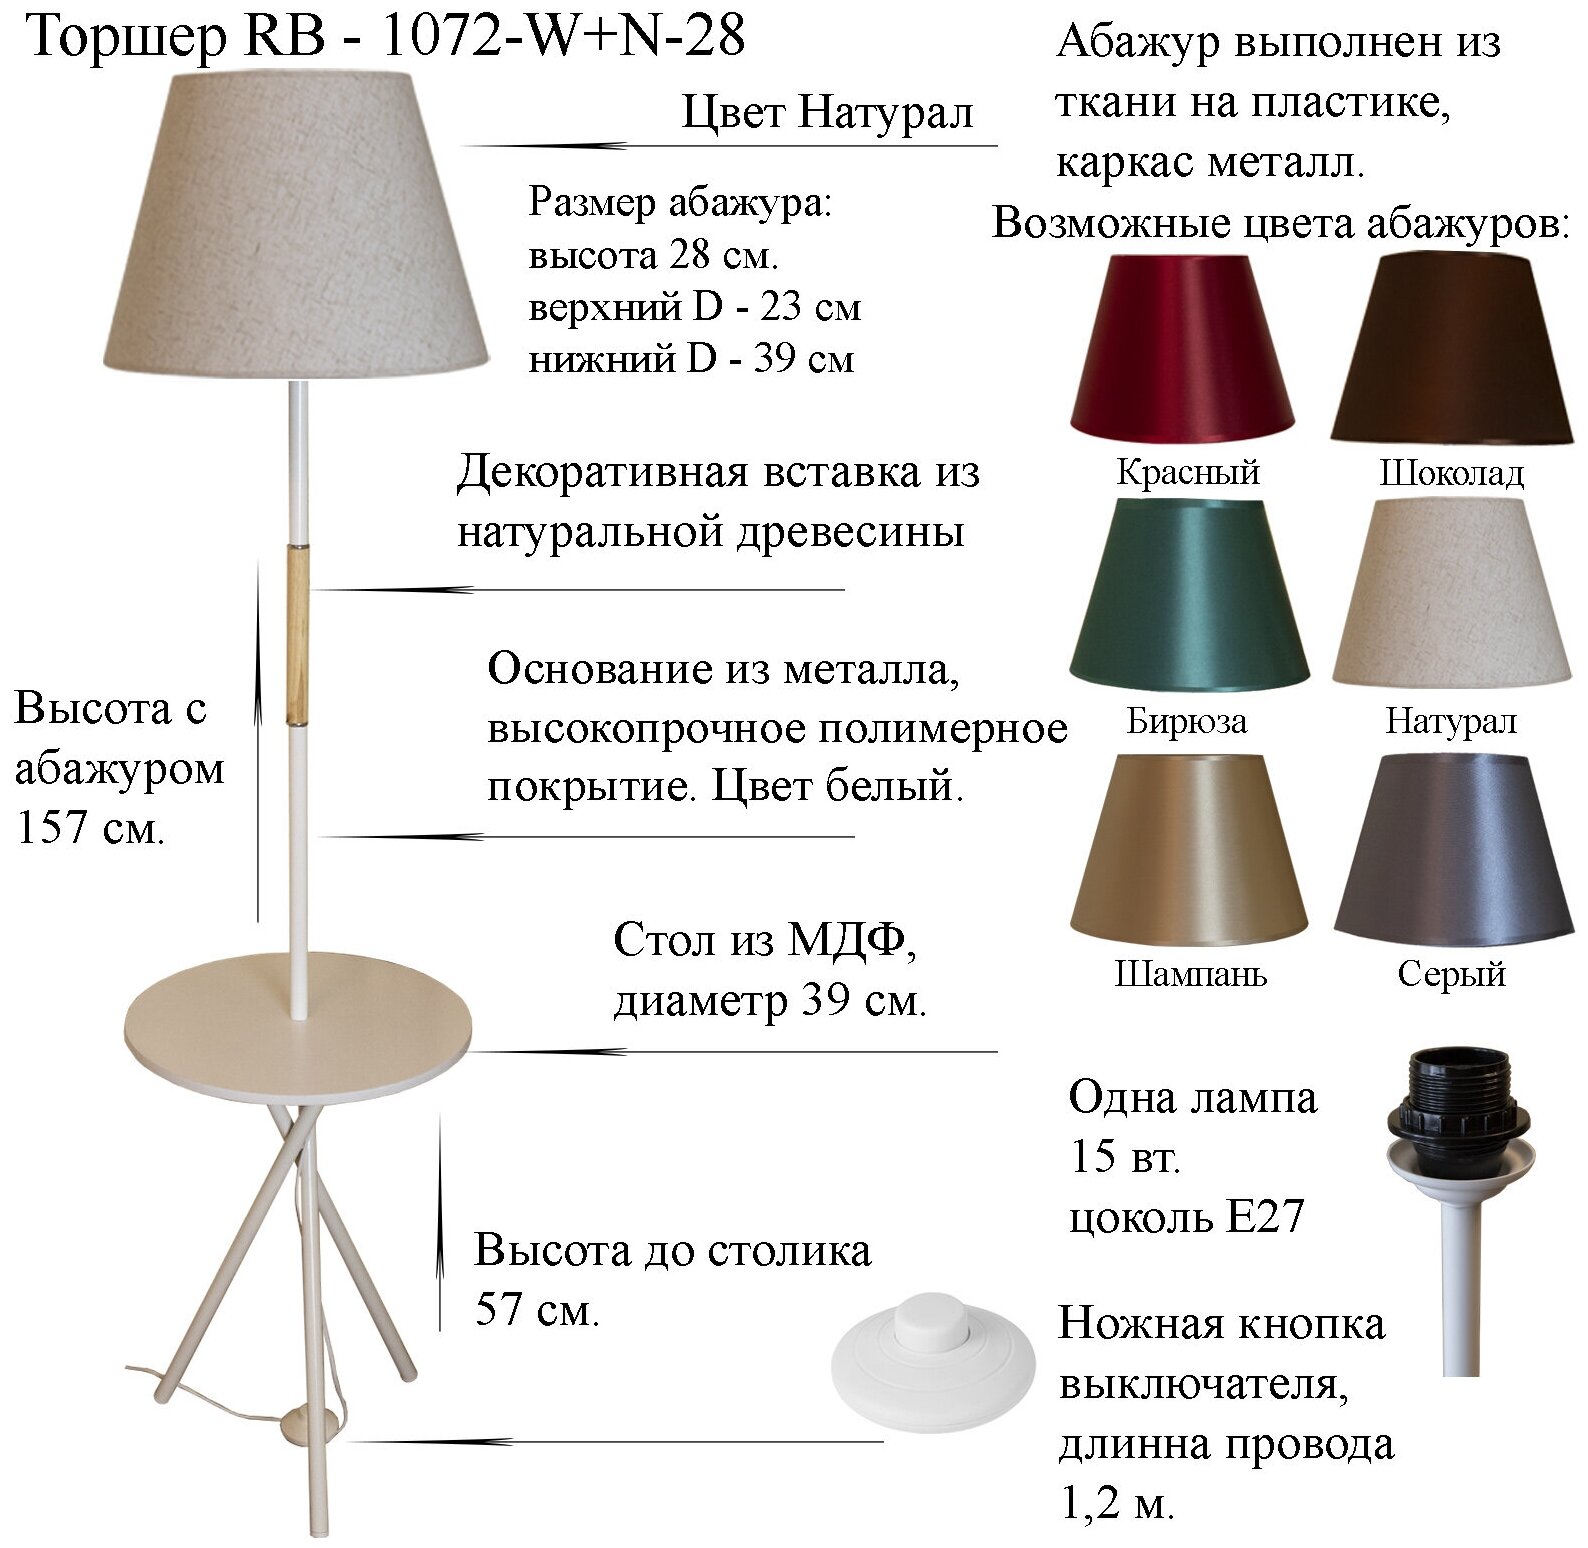 Напольный светильник, Торшер. Белый/Натурал. RB-1072-W+N-28, E27, 15 Вт.